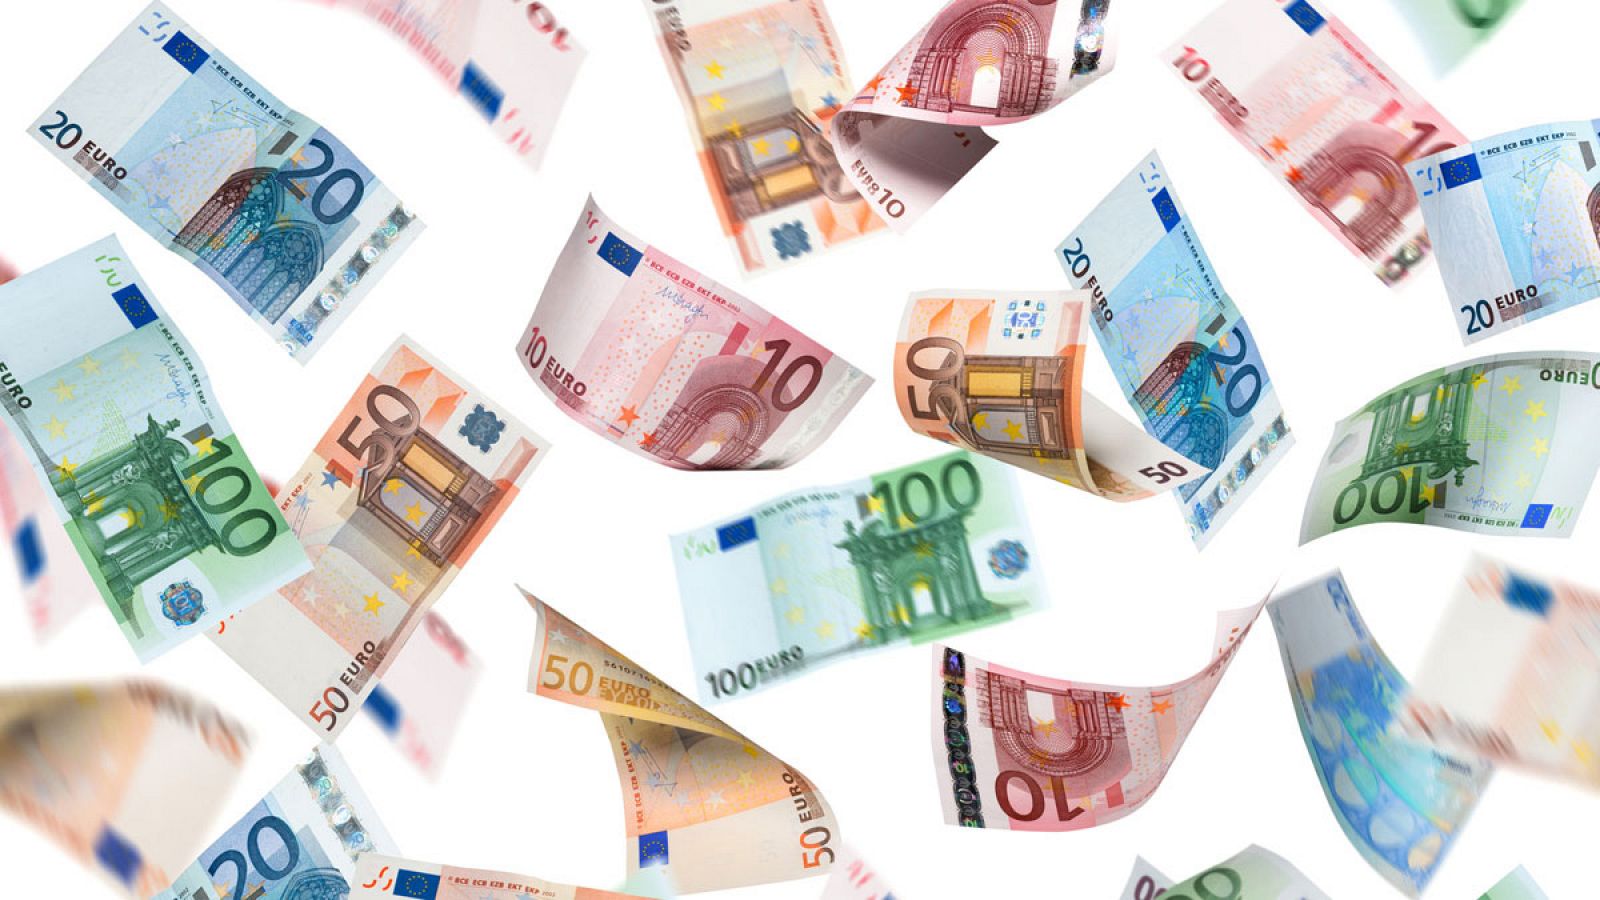 Billetes de euro de distintas denominaciones